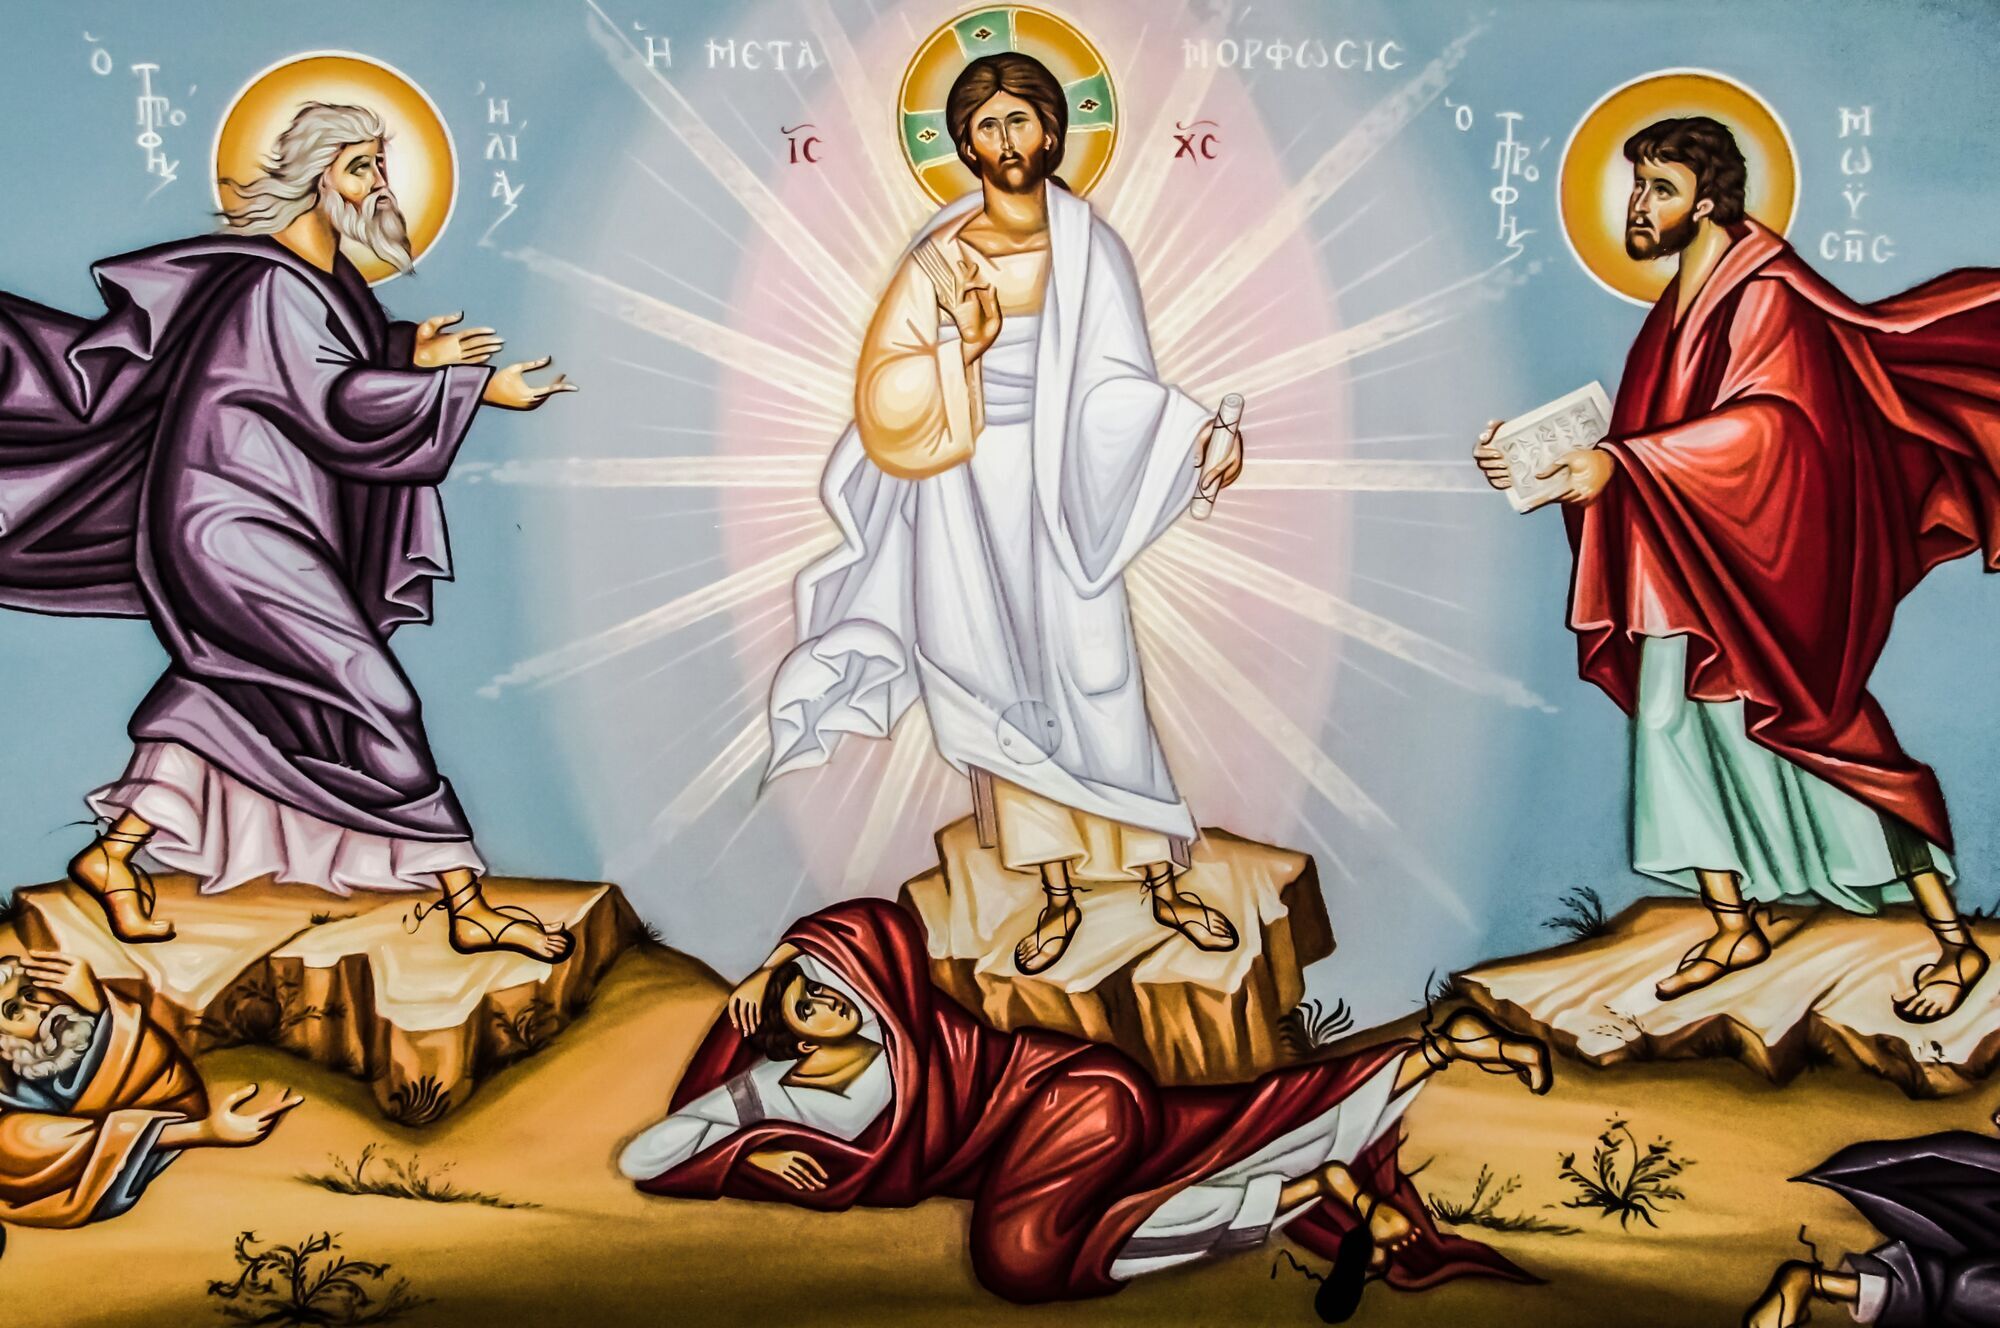 Событие Преображения описано в трех Евангелиях